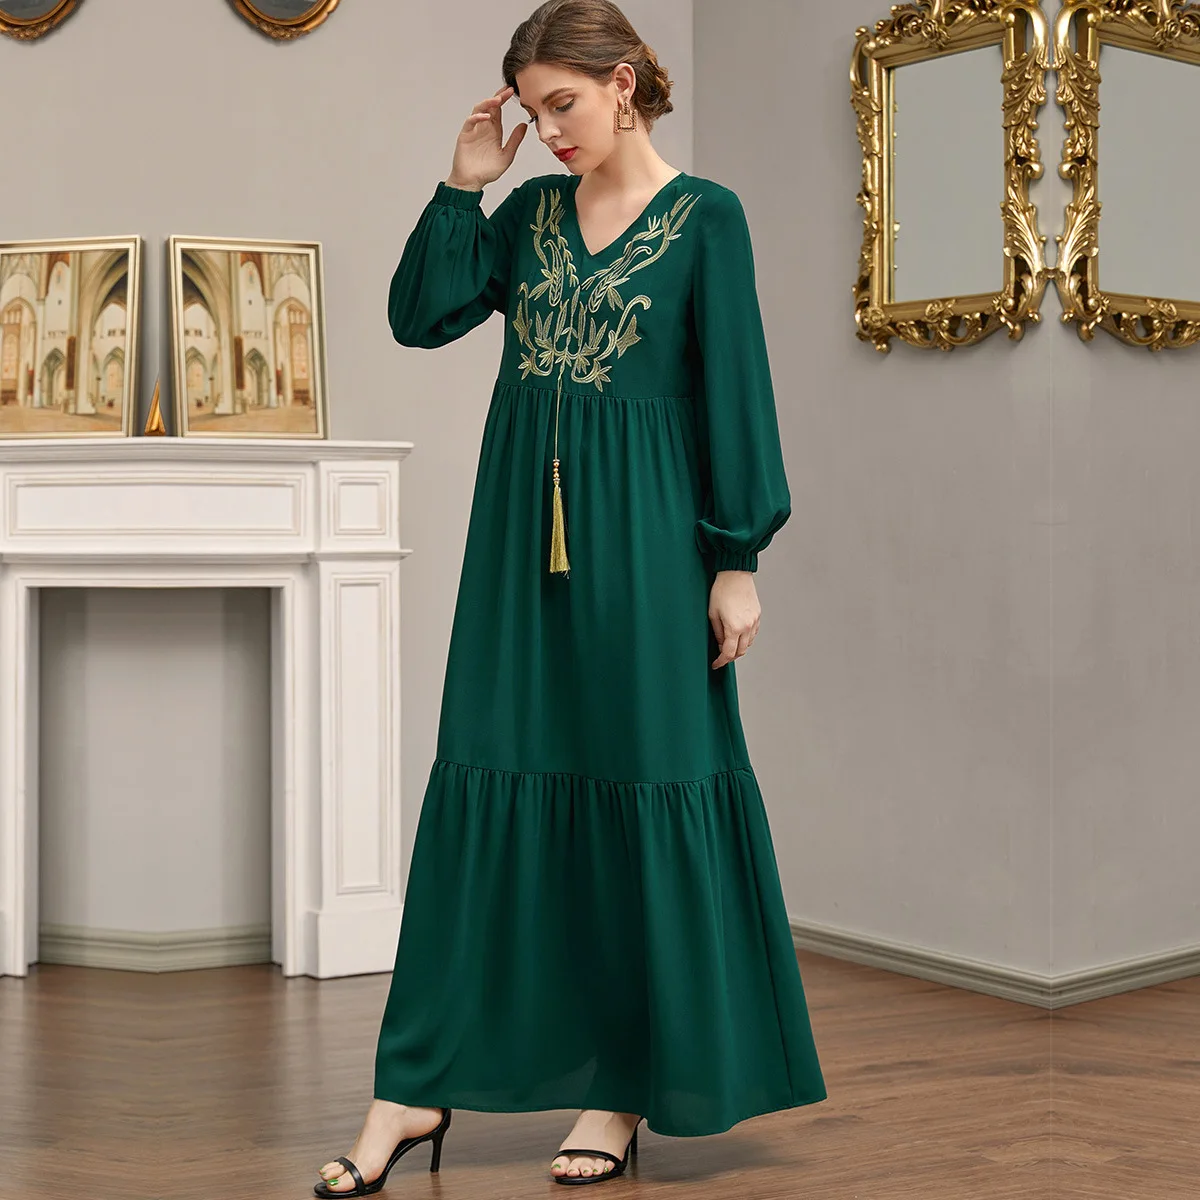 Wepbel Djellaba арабское платье мусульманское платье Женская Рамадана Абая Исламская одежда халат с вышивкой многослойное платье с бахромой Абая